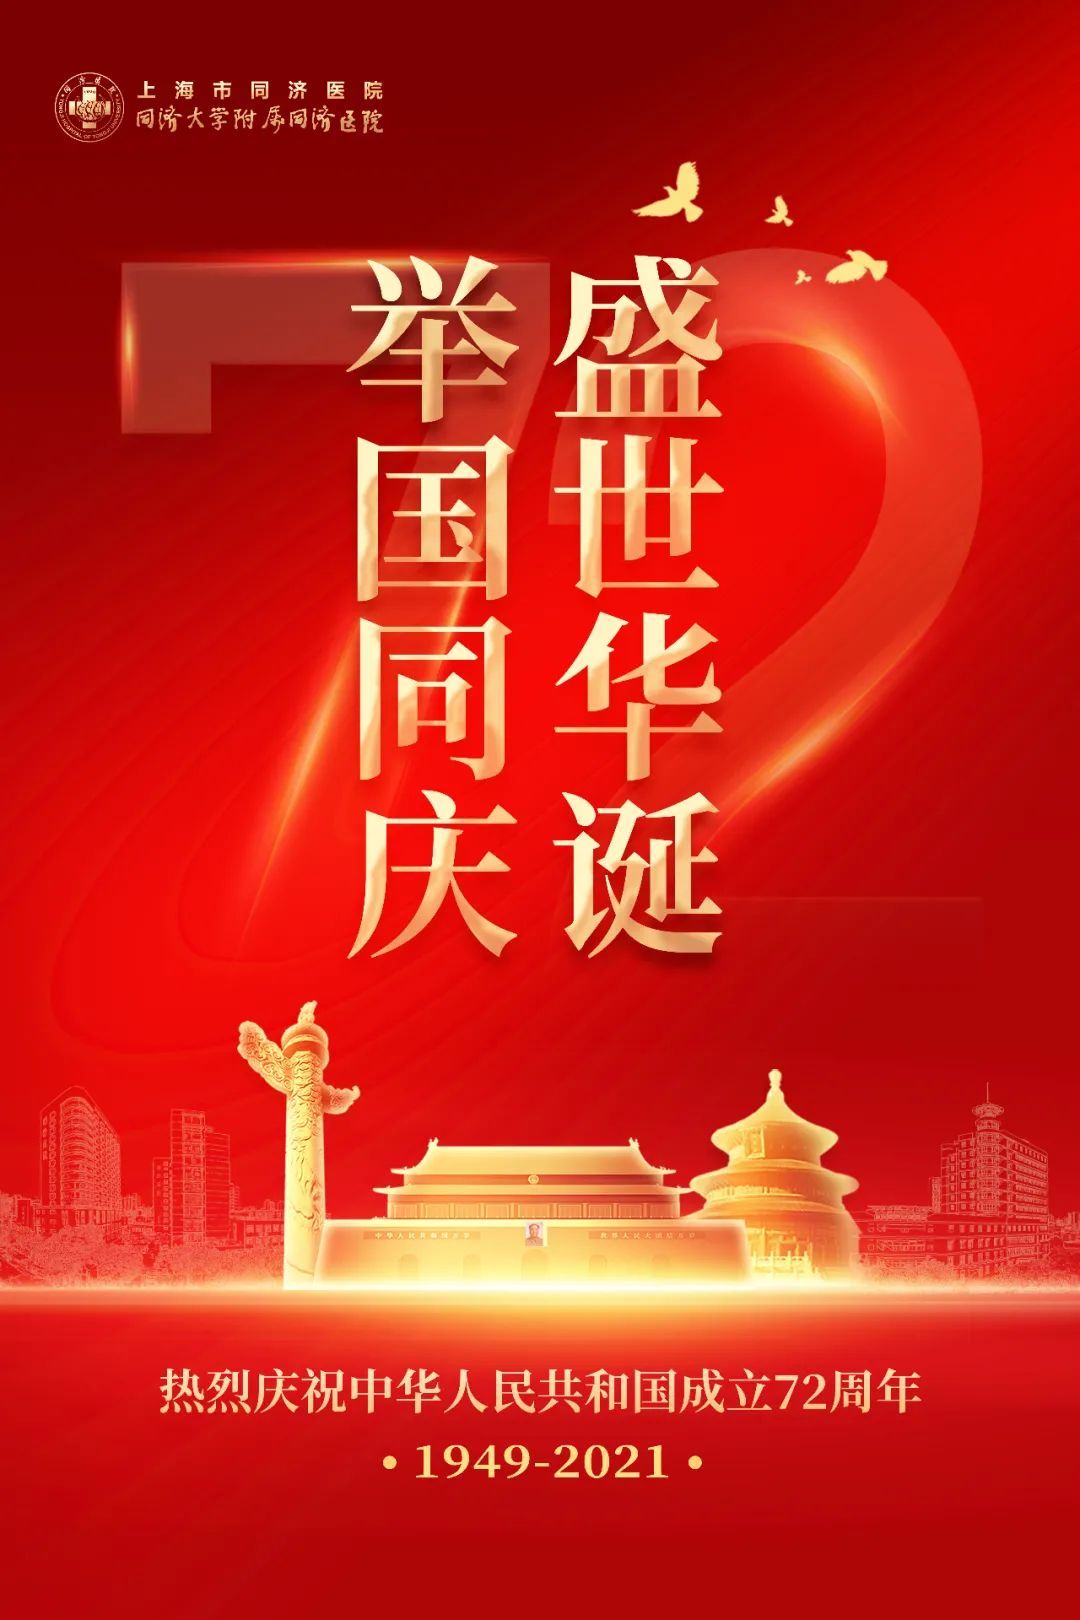 盛世华诞举国同庆热烈庆祝中华人民共和国成立72周年